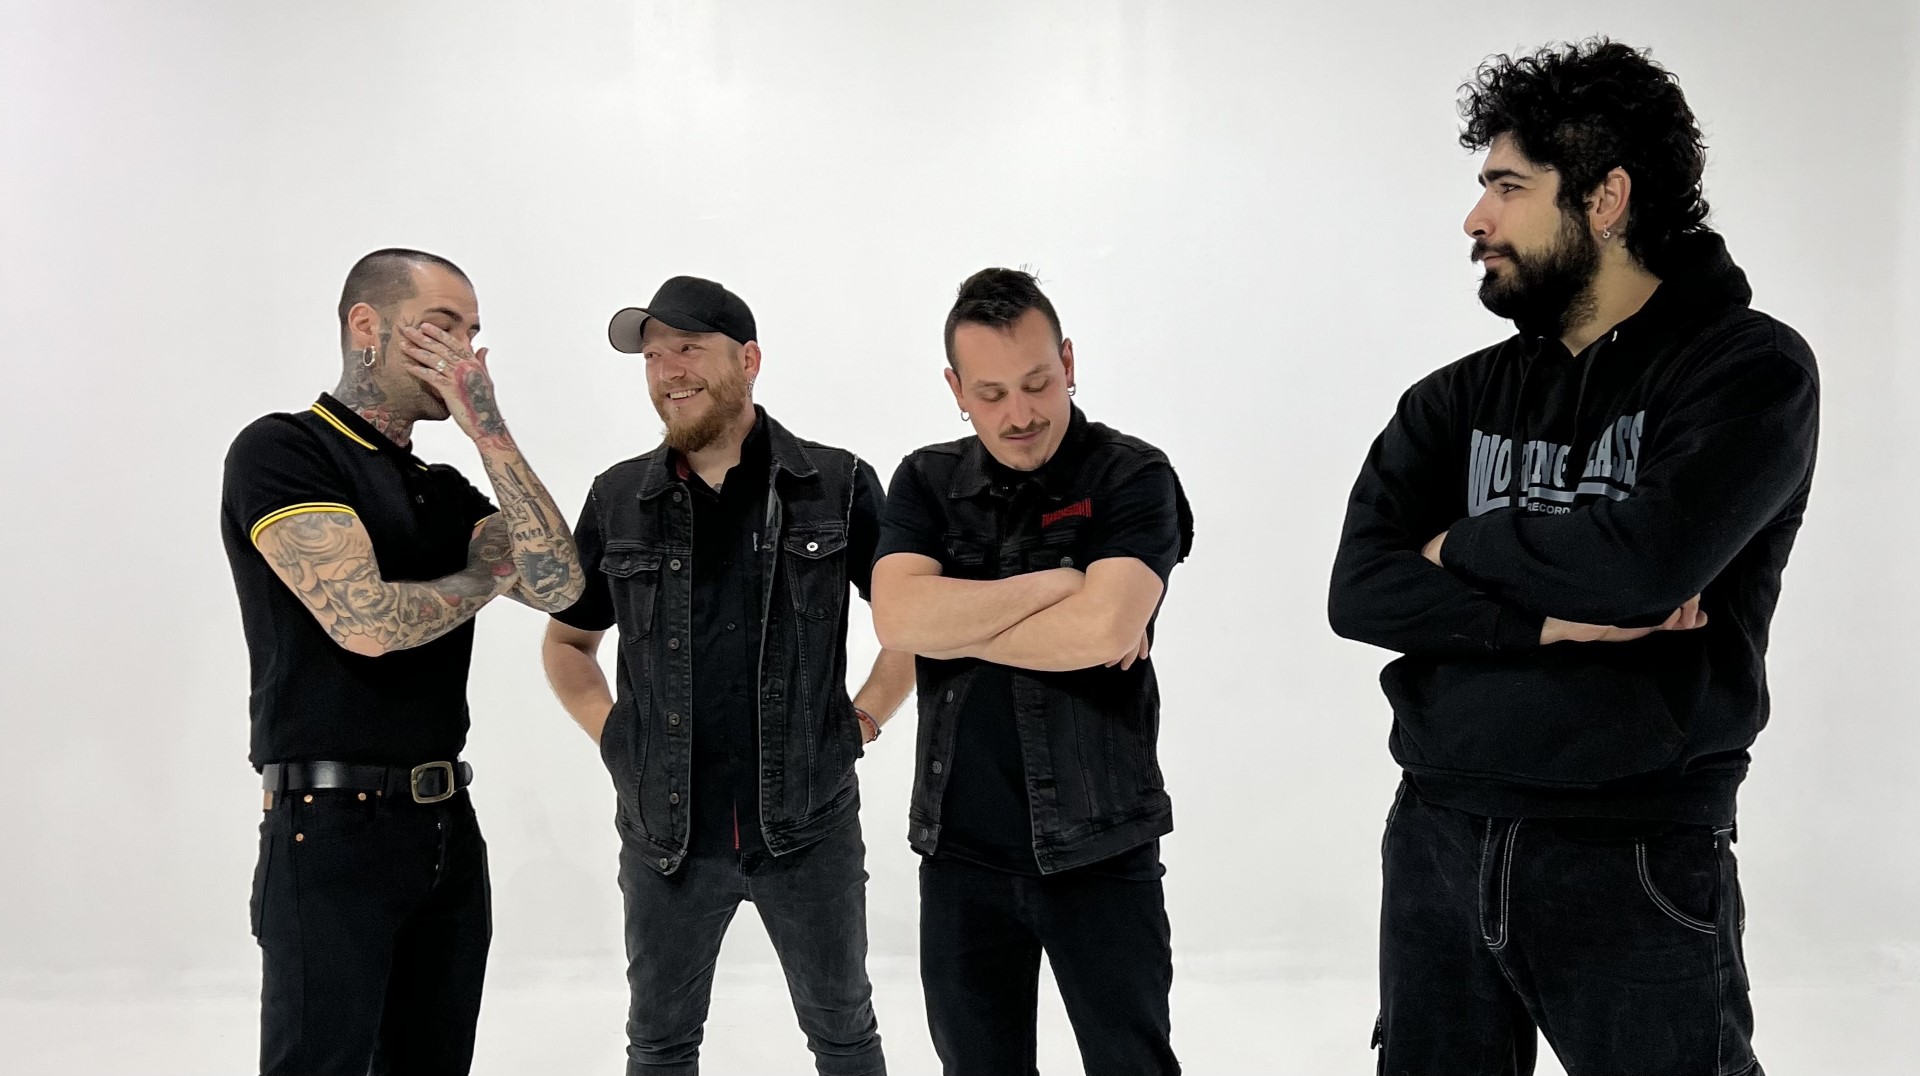 Nuevo single adelanto de los punk rockers madrileños Transmisión N